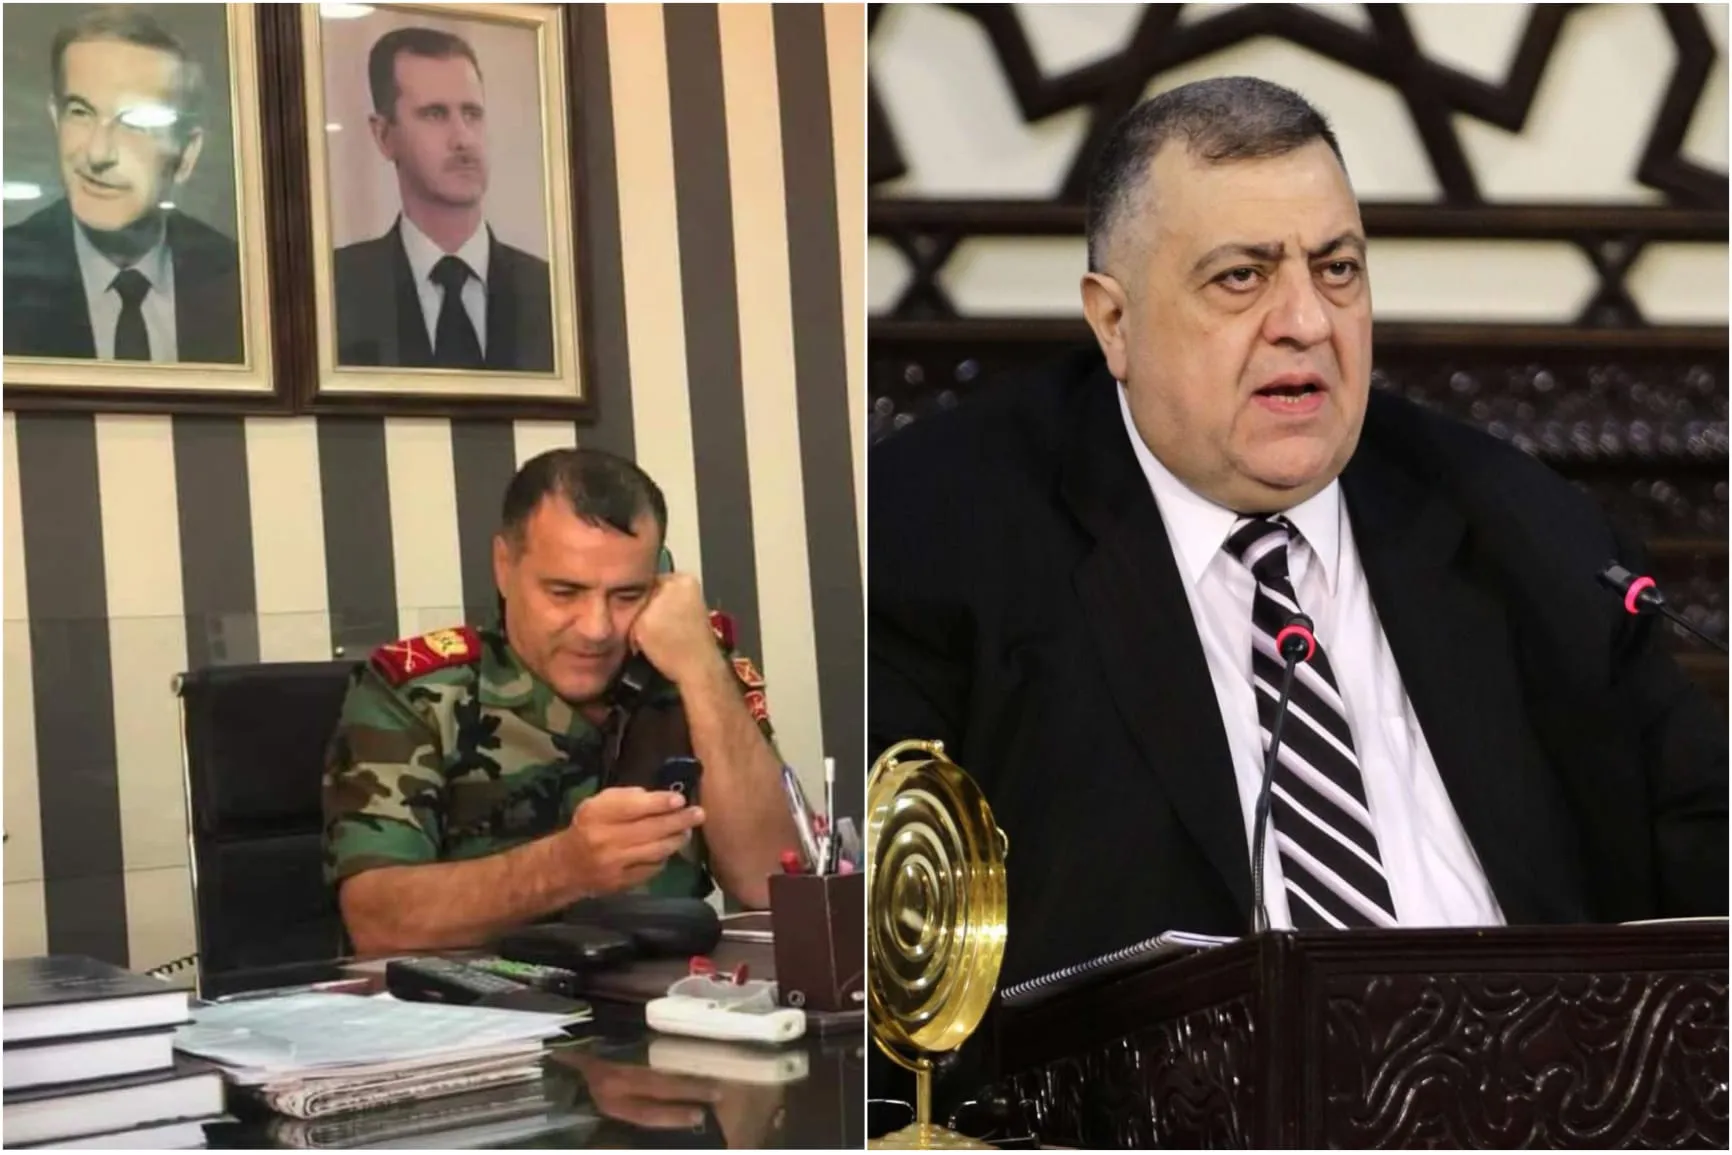 النظام يعيد تنصيب "حمودة" برئاسة "مجلس التصفيق" واللواء "عباس" قائداً للشرطة العسكرية